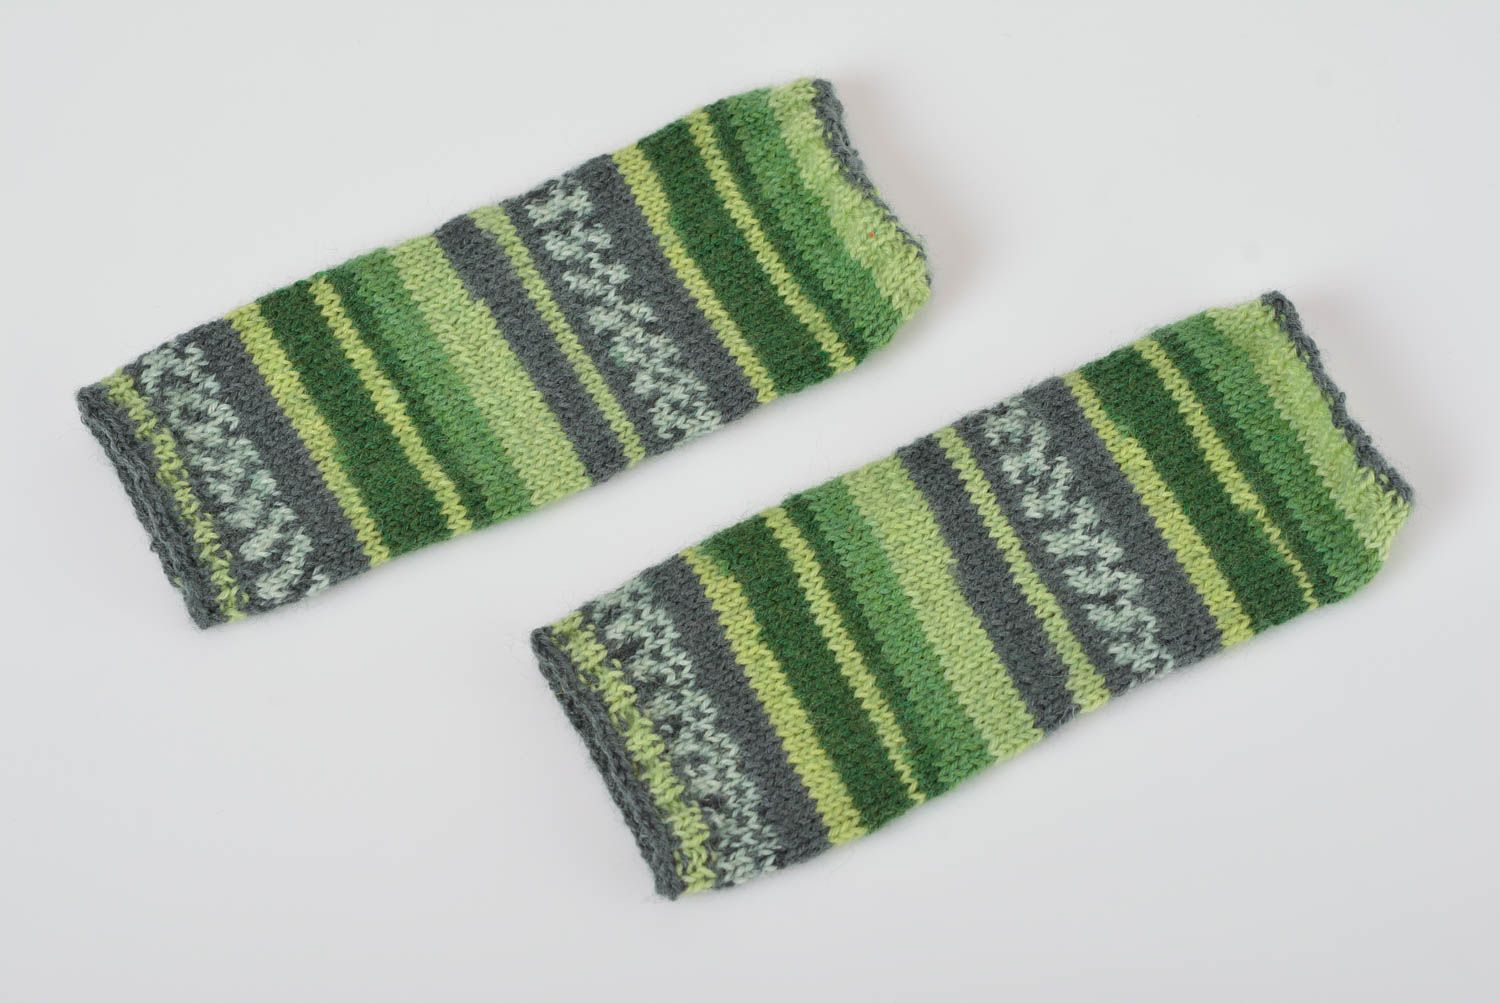 Митенки вязаные спицами из шерсти ручной работы зеленые полосатые женские фото 1